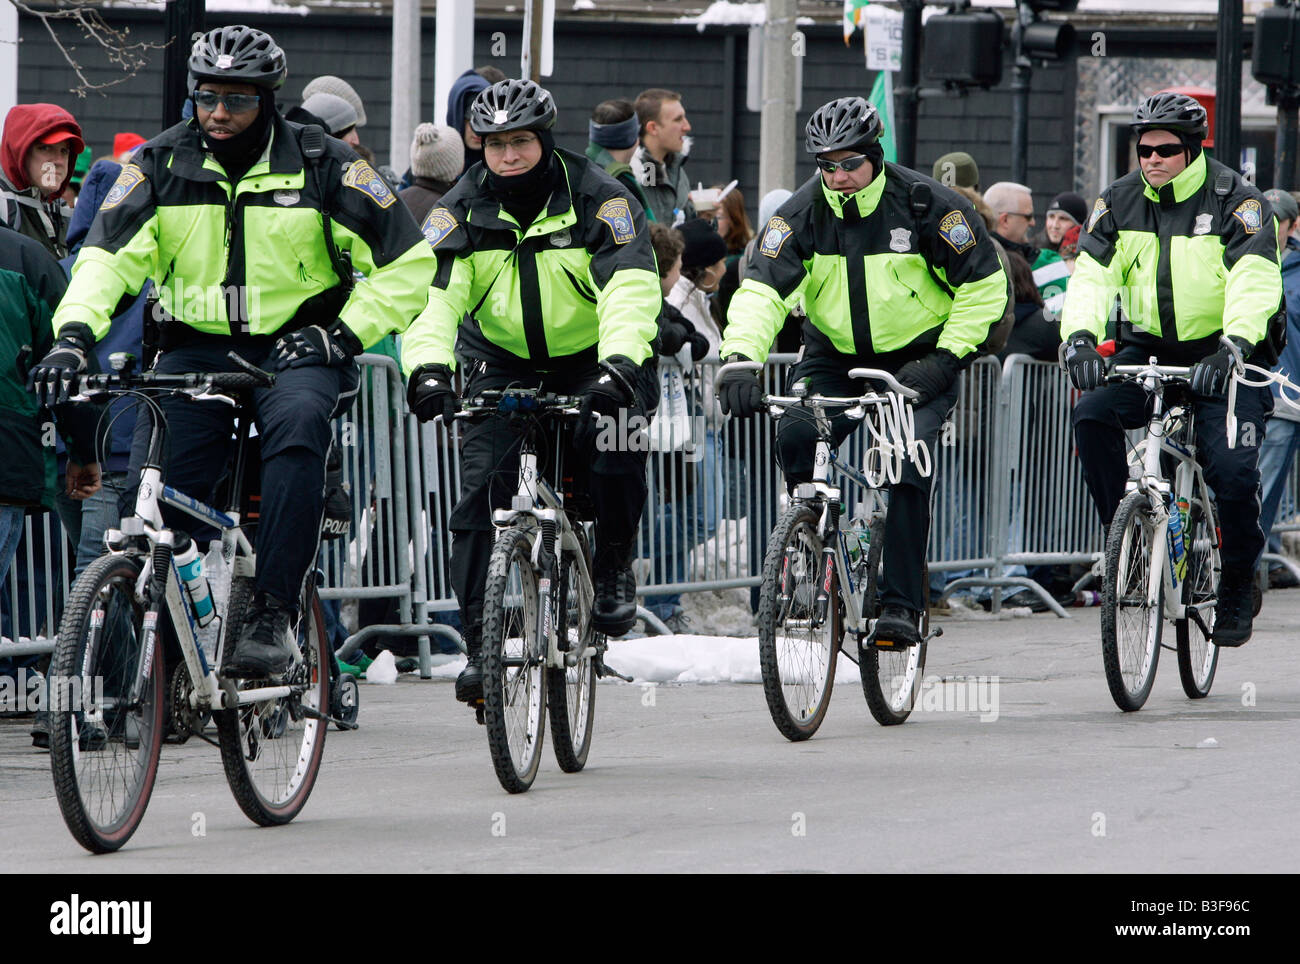 La policía patrulla en bicicleta, Boston, Massachusetts Foto de stock